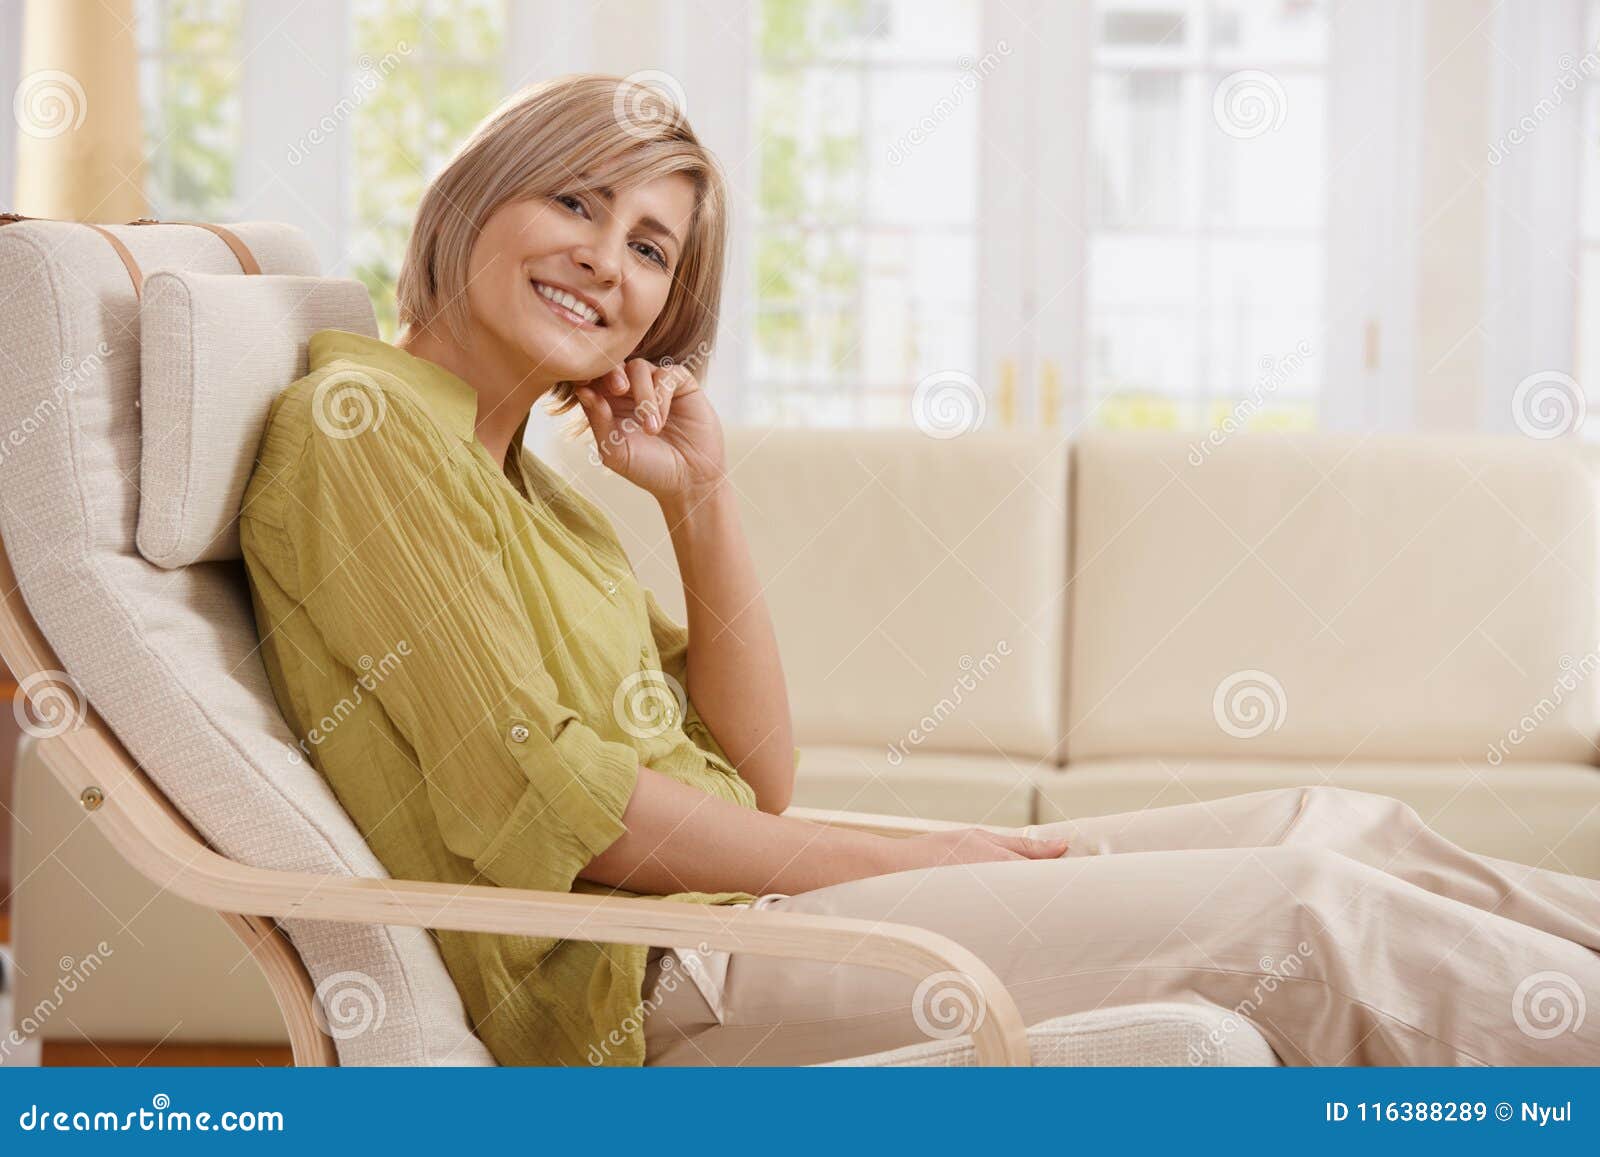 portrait of woman in armchair